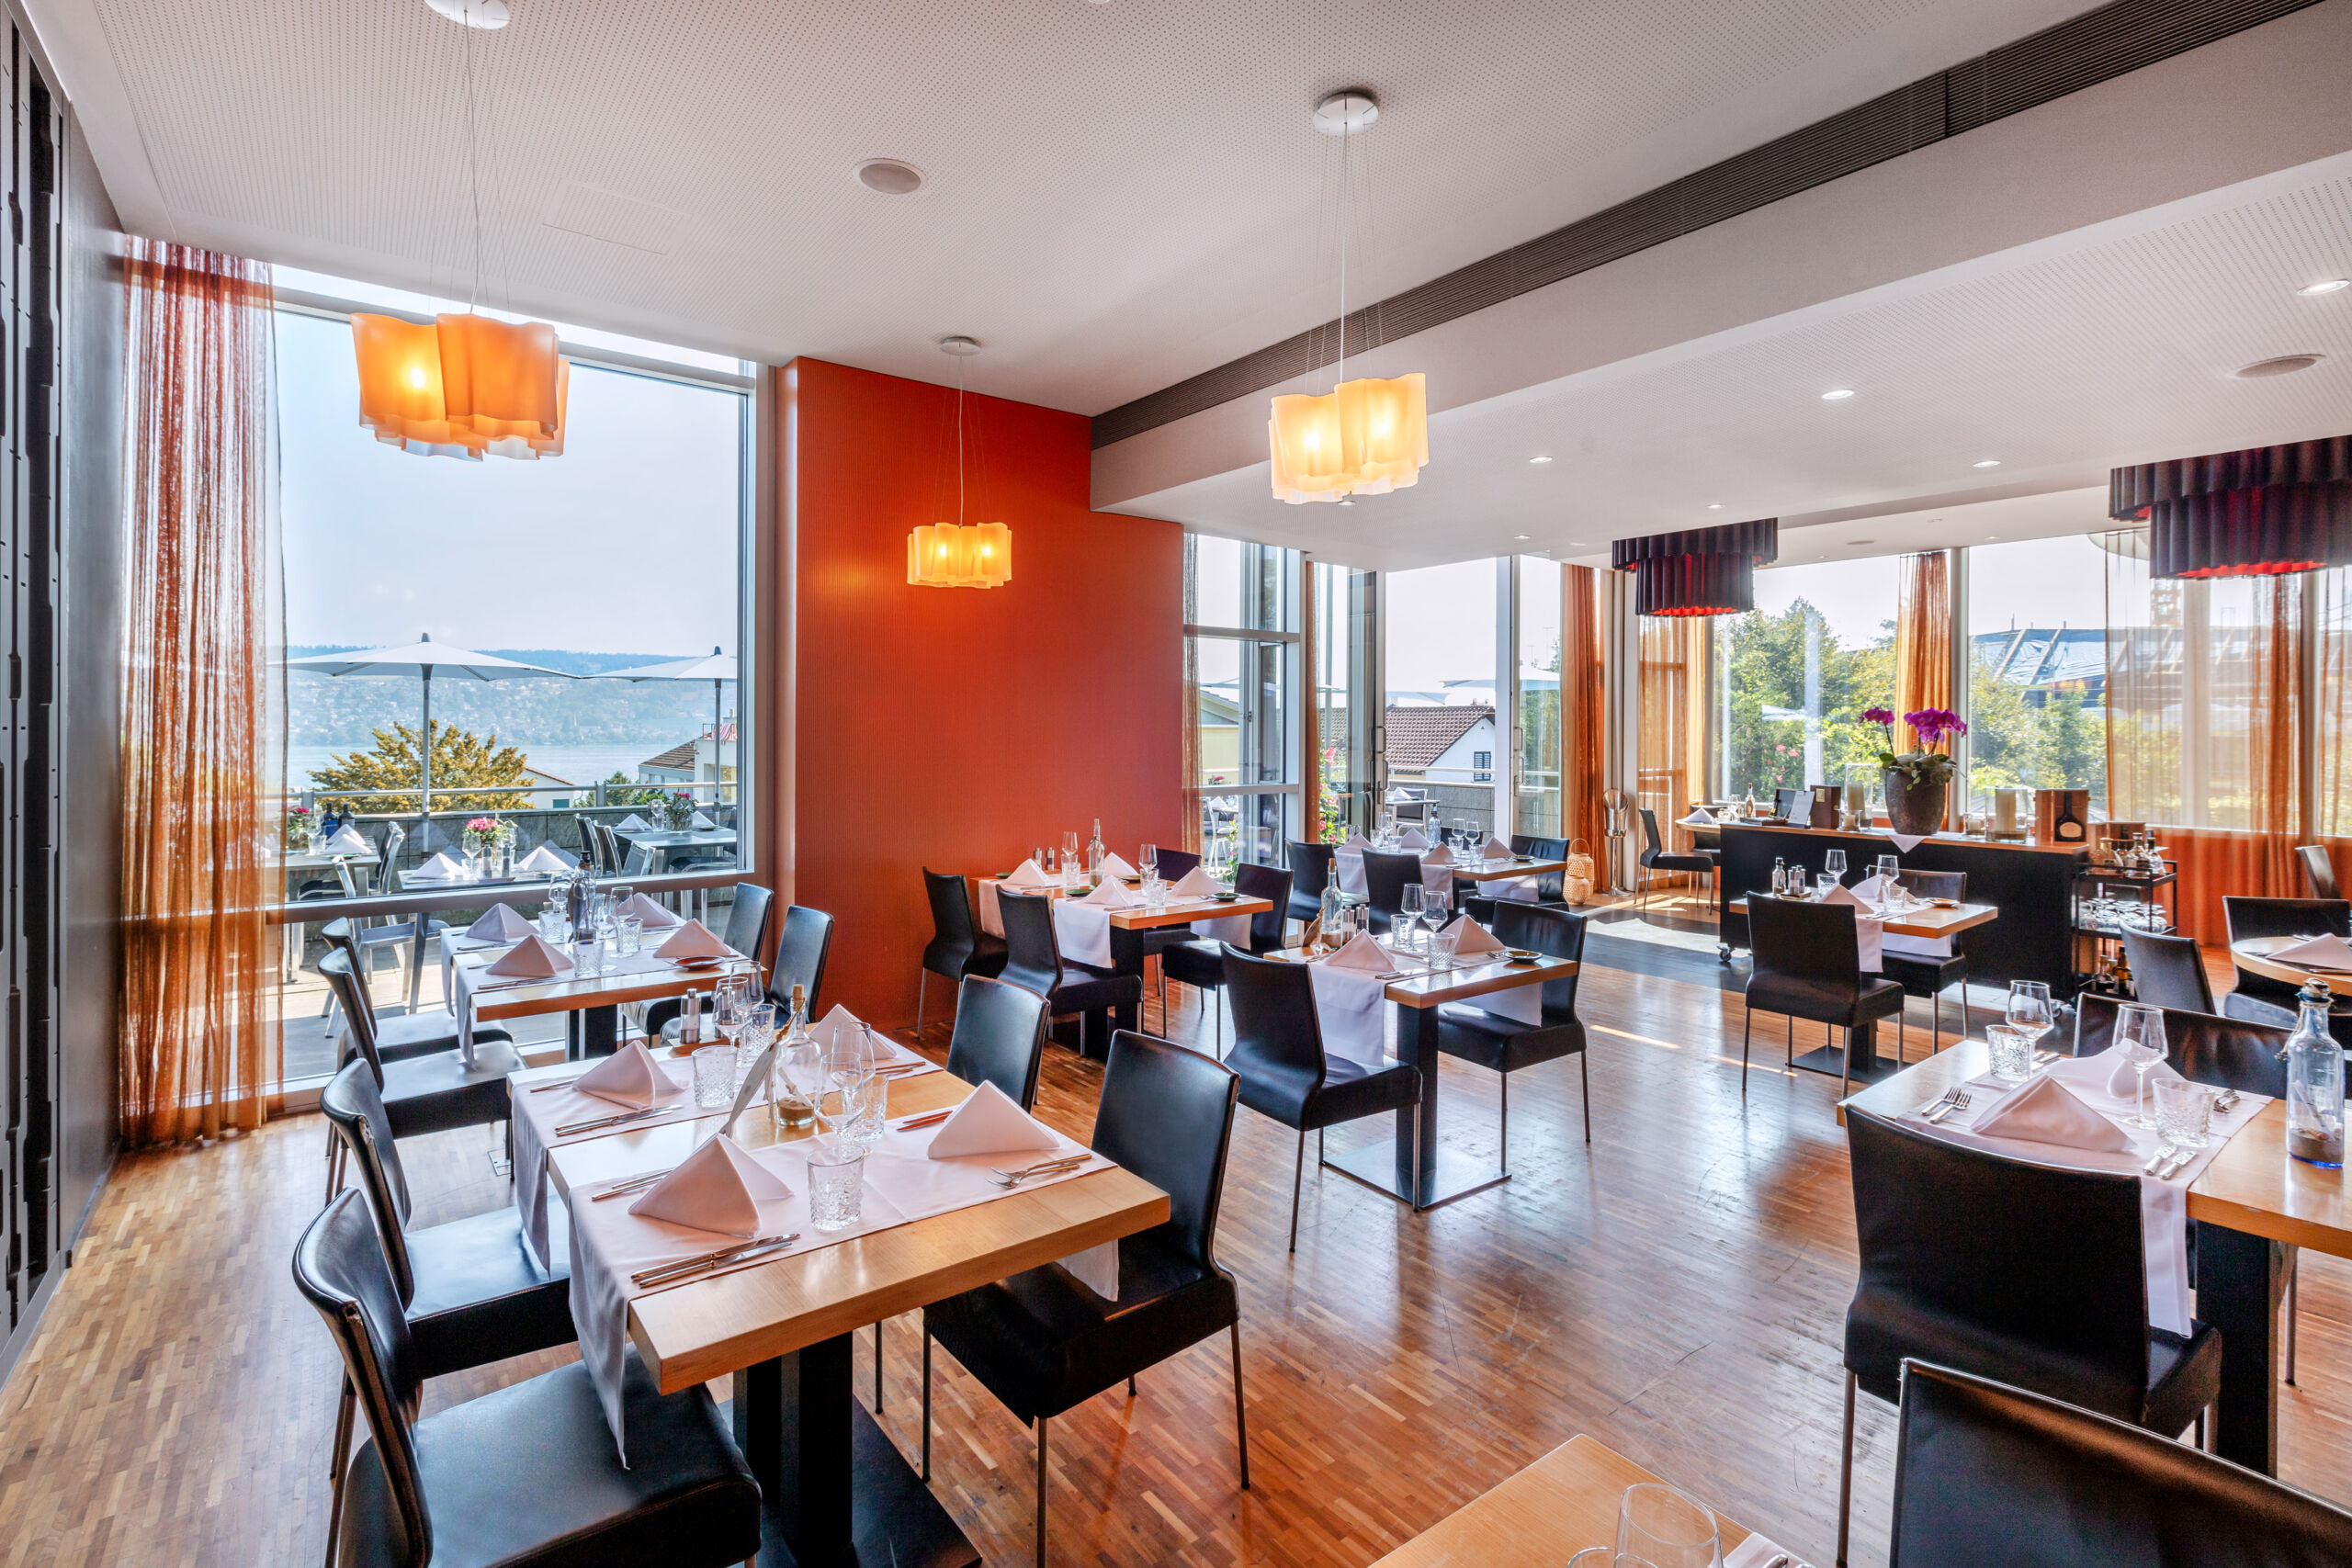 Restaurant Sedartis in Thalwil, Innenraum mit schöner Aussicht auf den Zürichsee